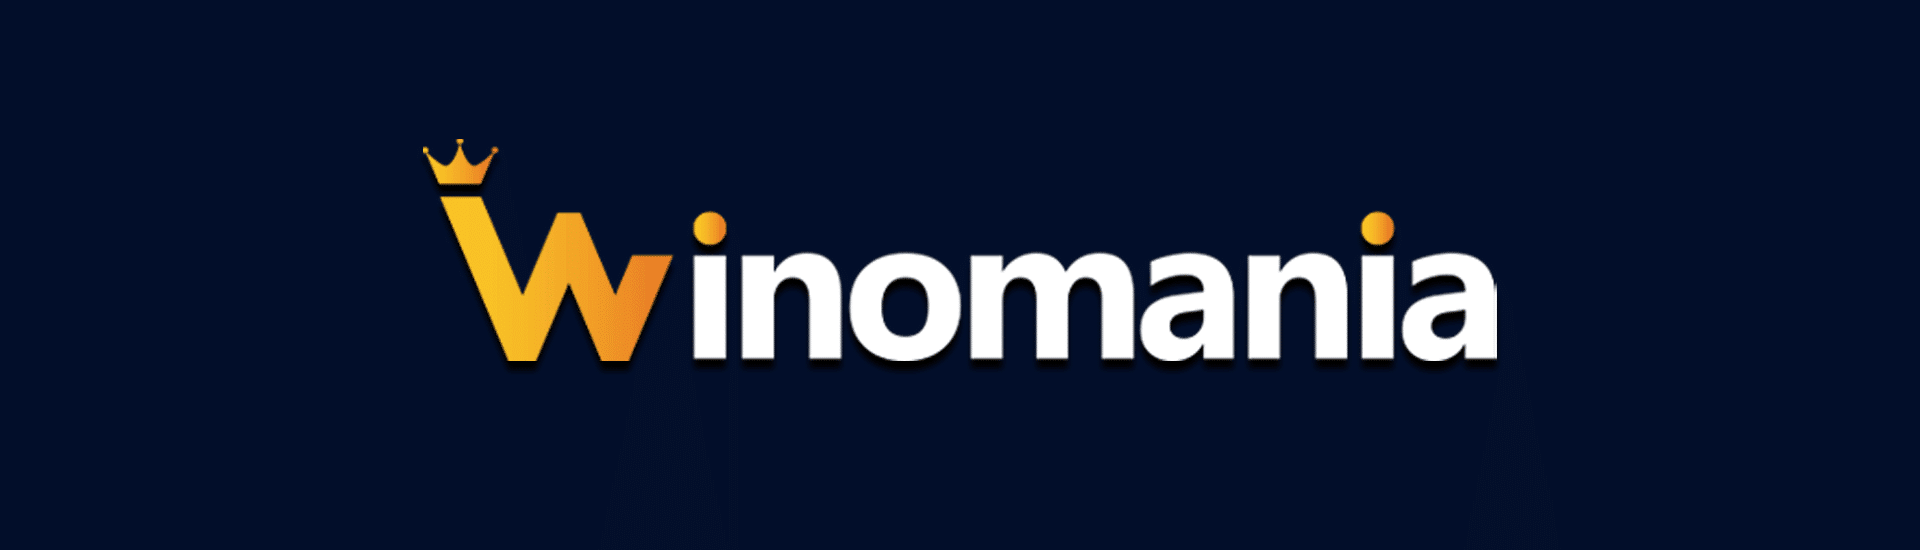 WinOMania Featured Image